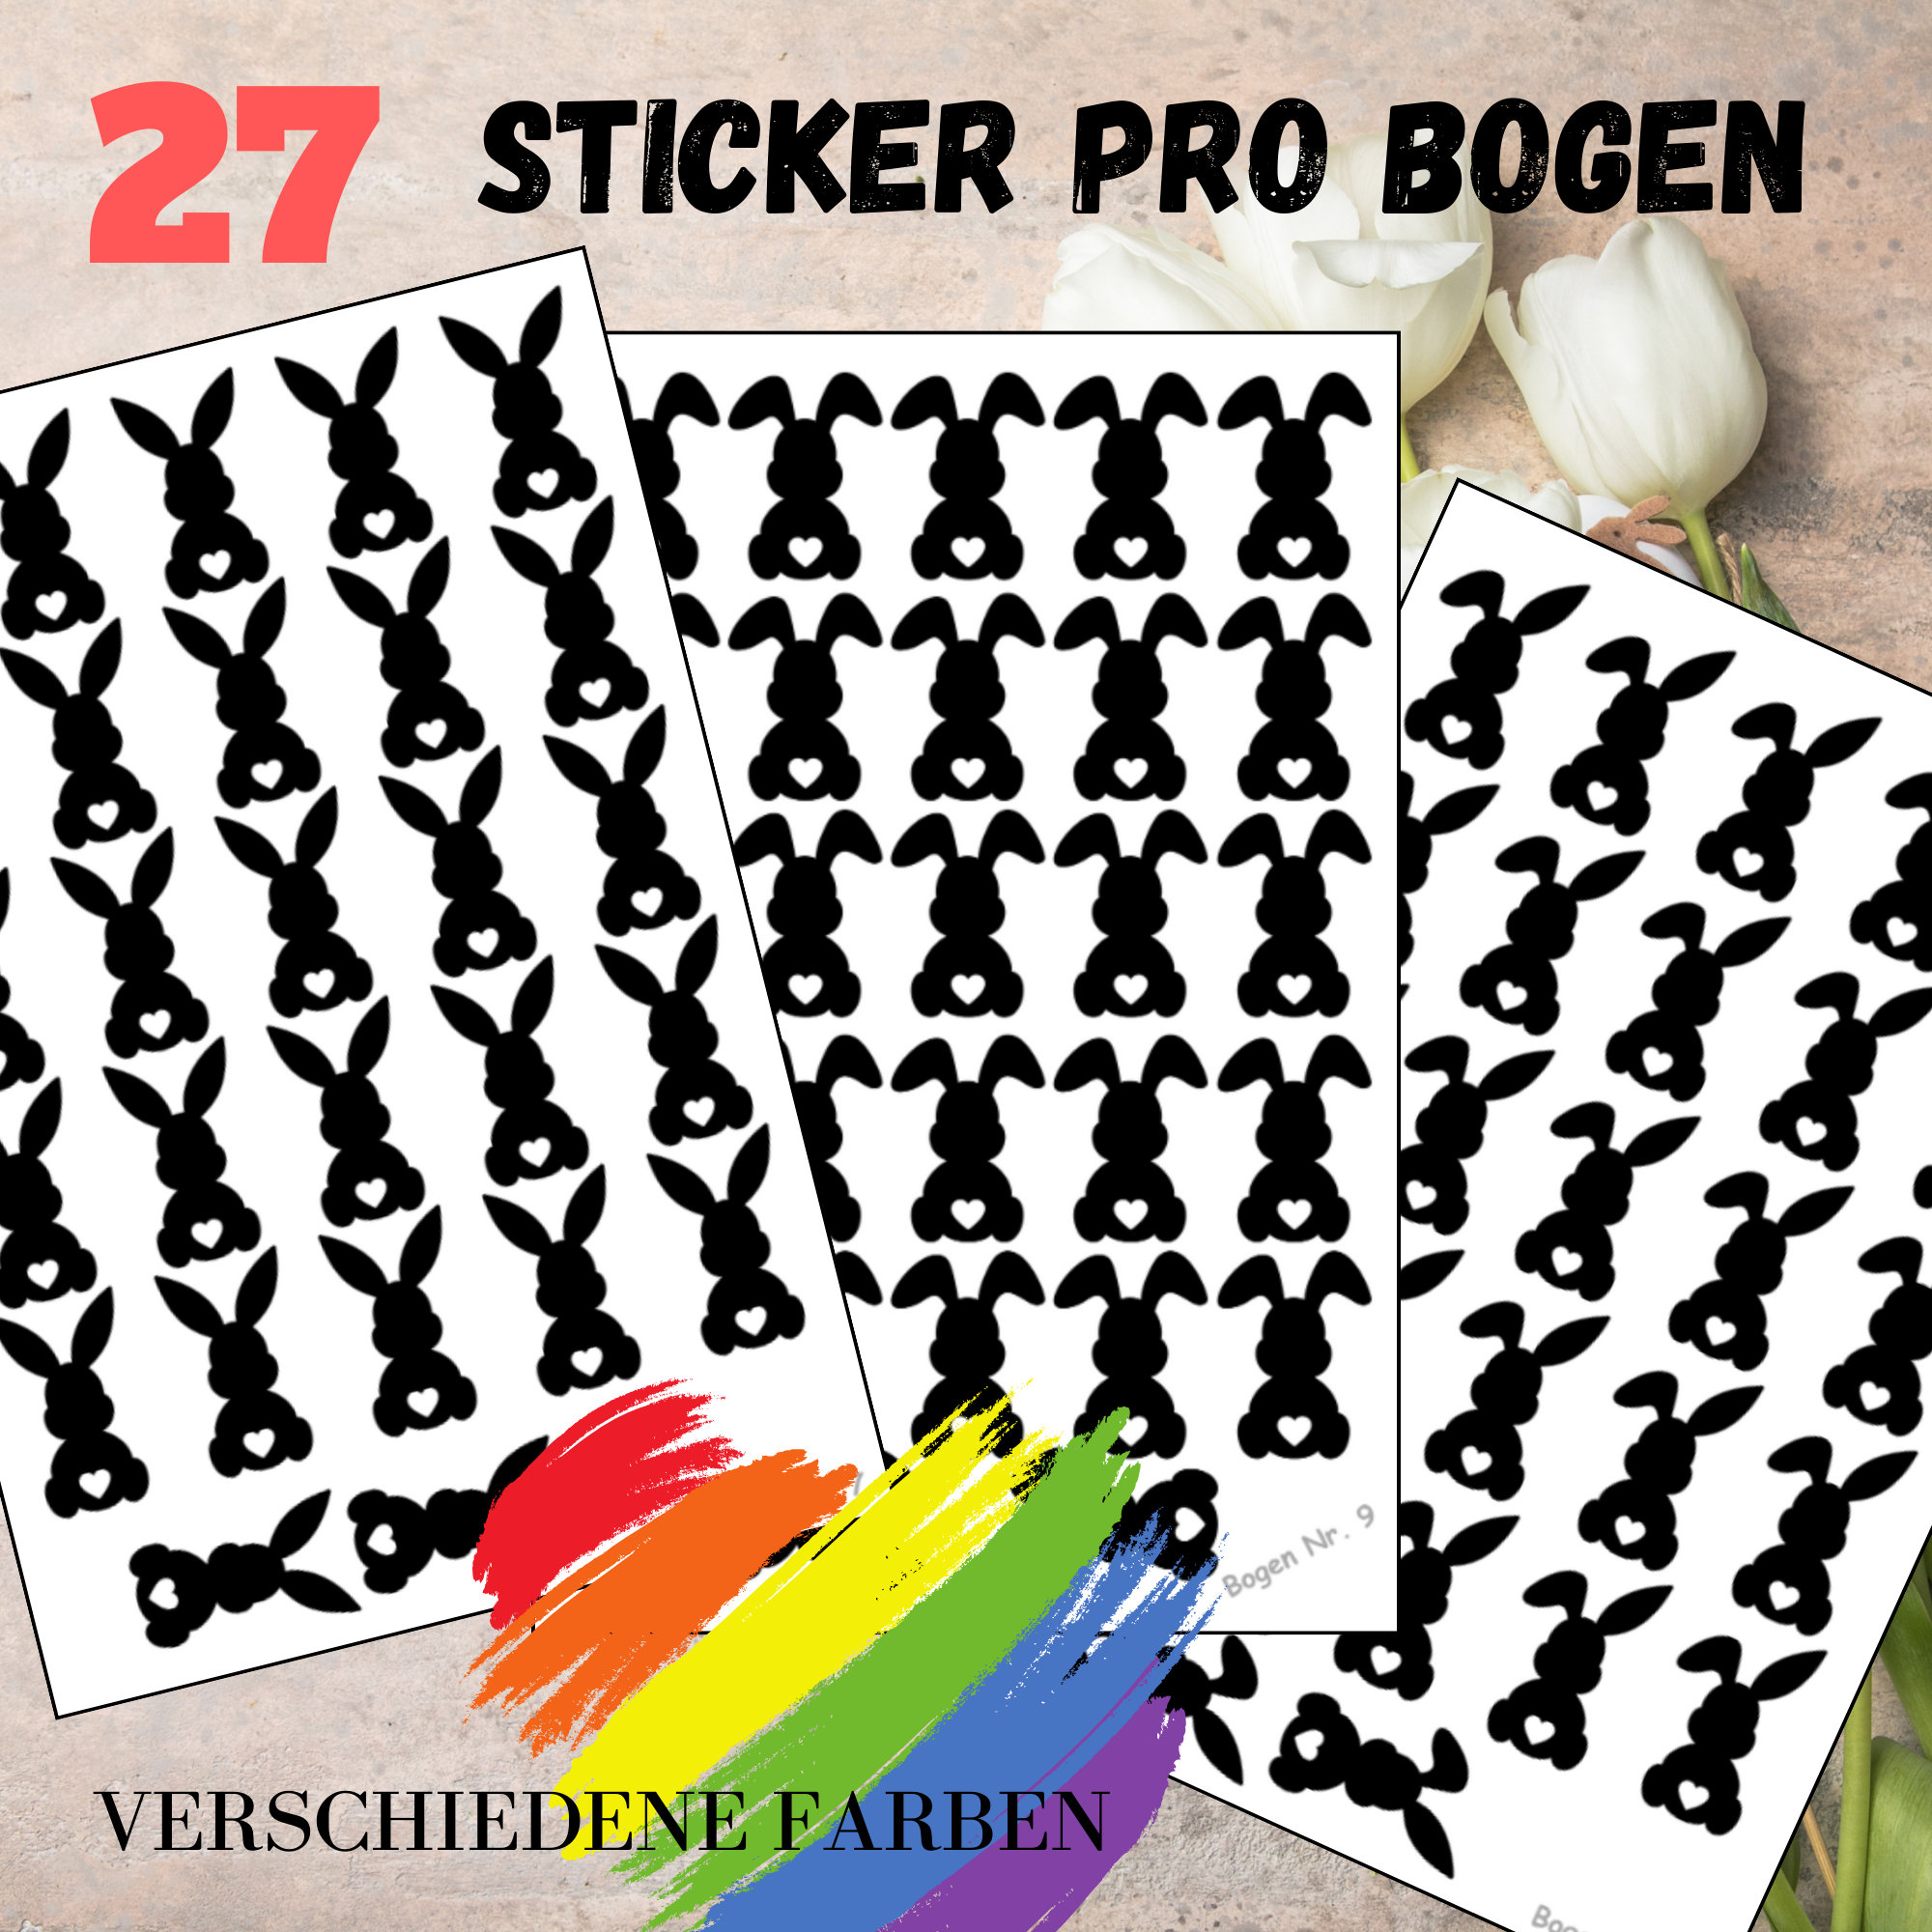 Sticker Bogen - Ostern Hase | 27 Sticker pro Bogen - Journal Sticker - Aufkleber 3 Bögen zur Auswahl I Farbe wählbar